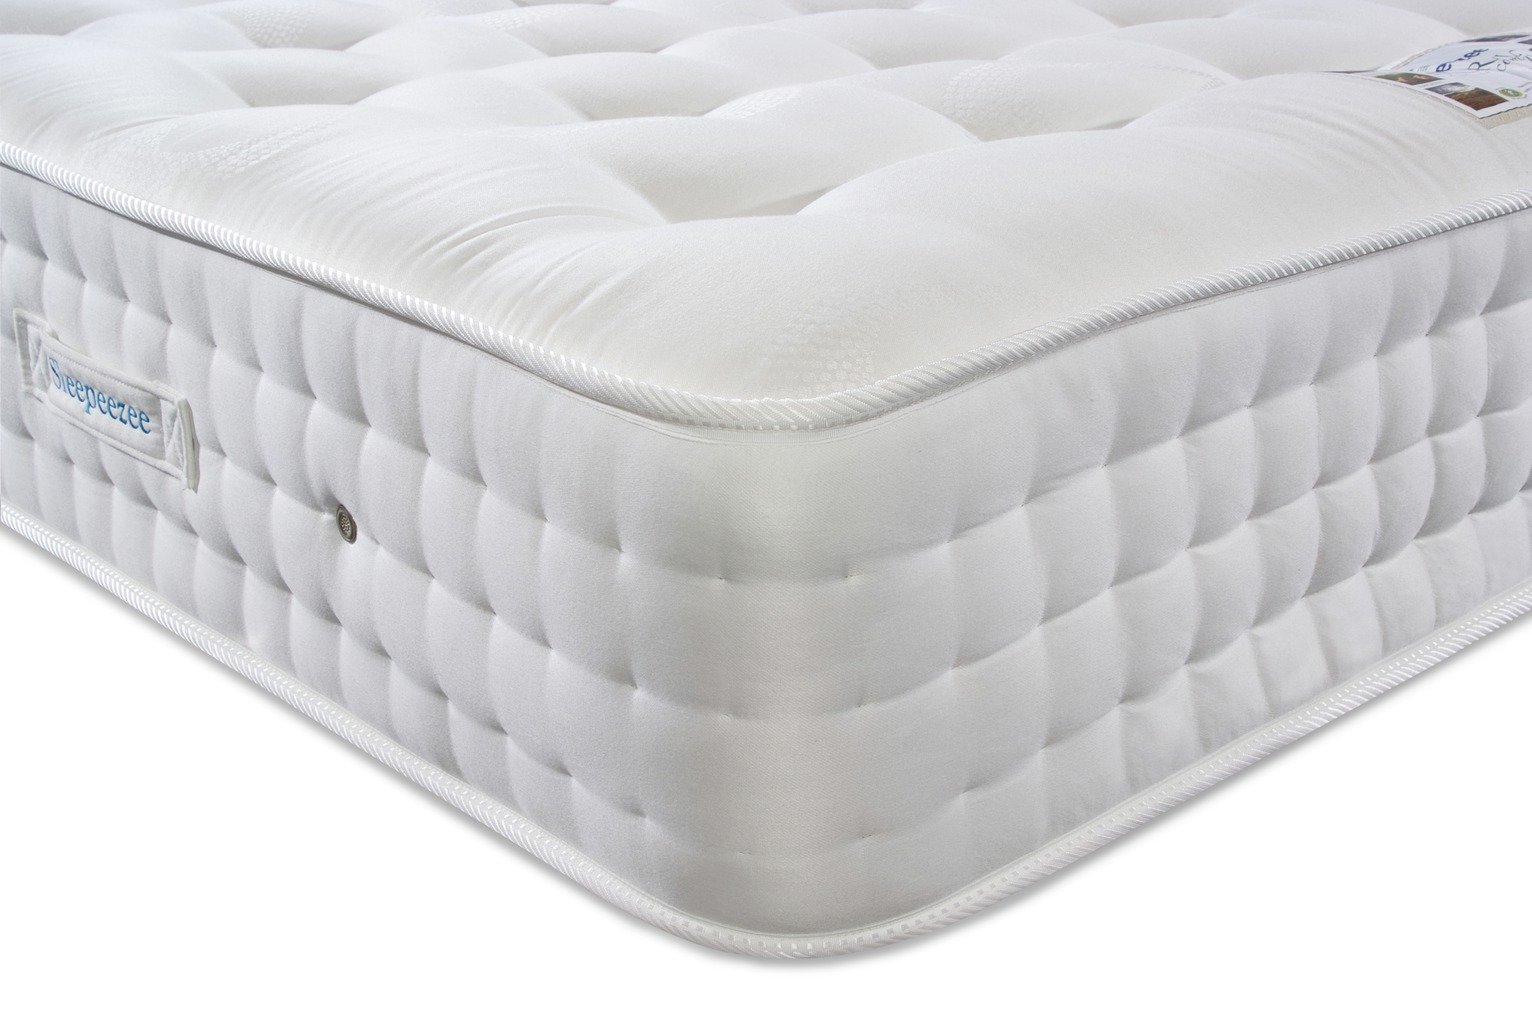 sleepeezee platinum 2200 mattress review